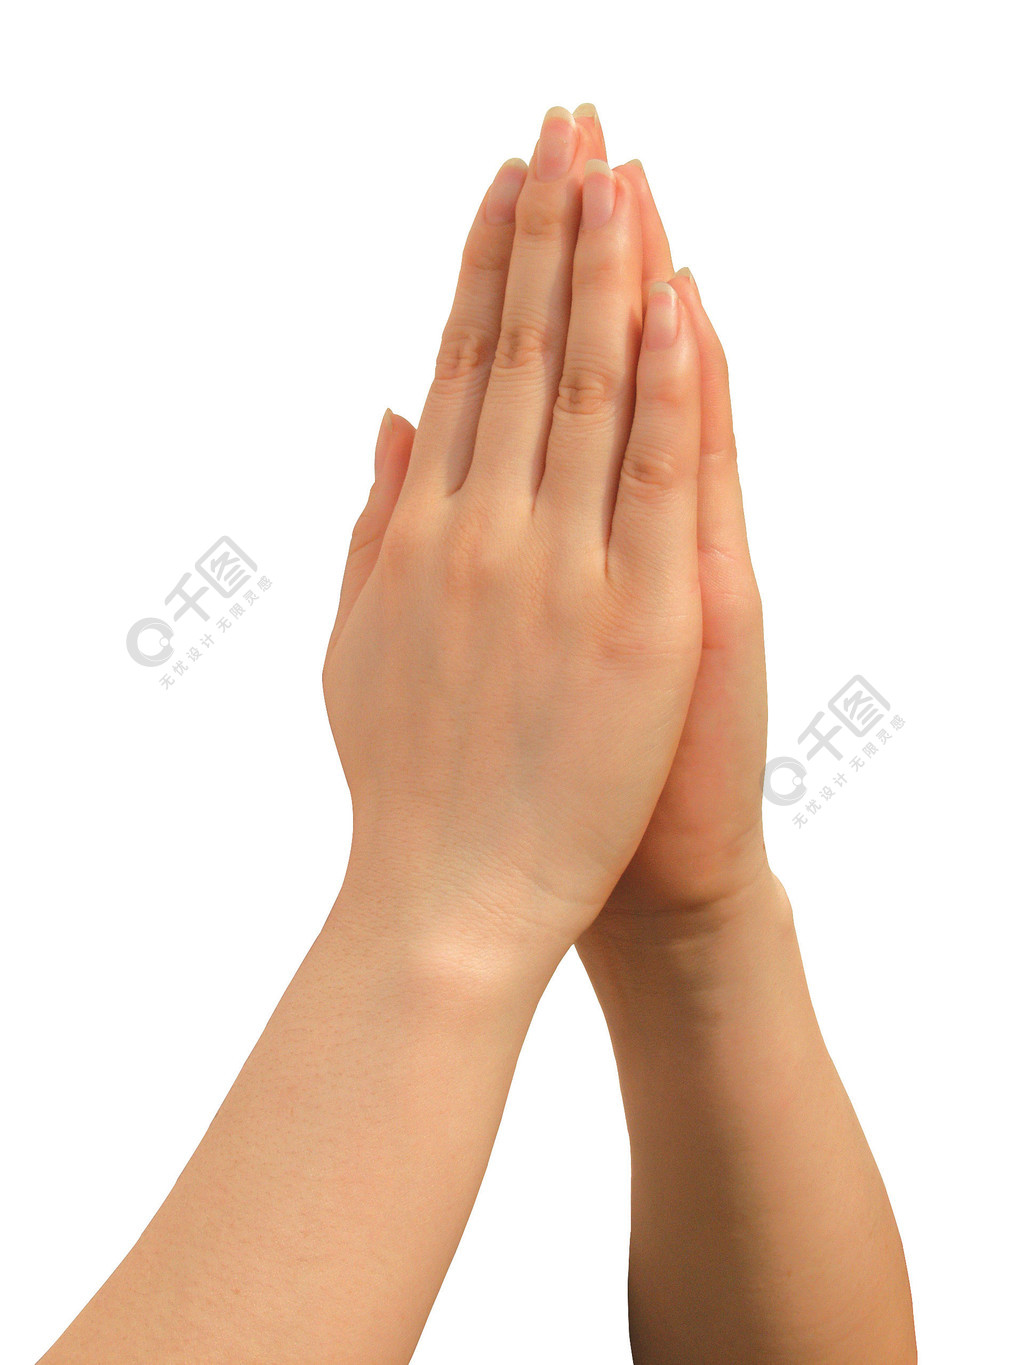 女人双手合十象征着祈祷